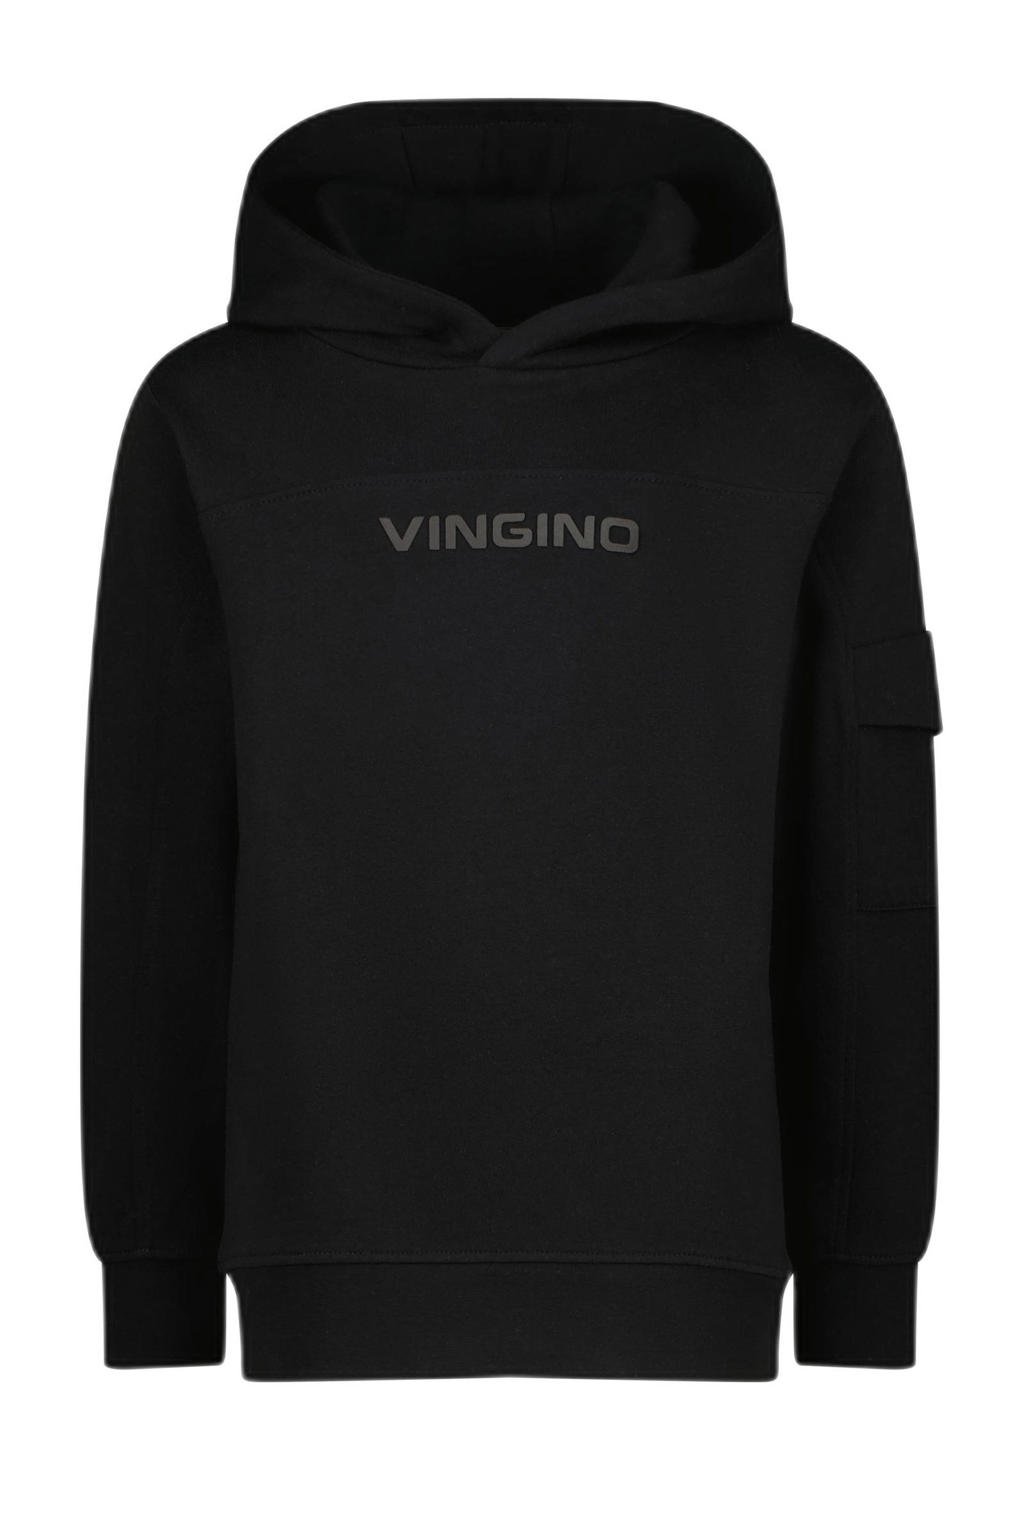 Zwarte jongens Vingino hoodie Necket van sweat materiaal met tekst print, lange mouwen, capuchon en geribde boorden